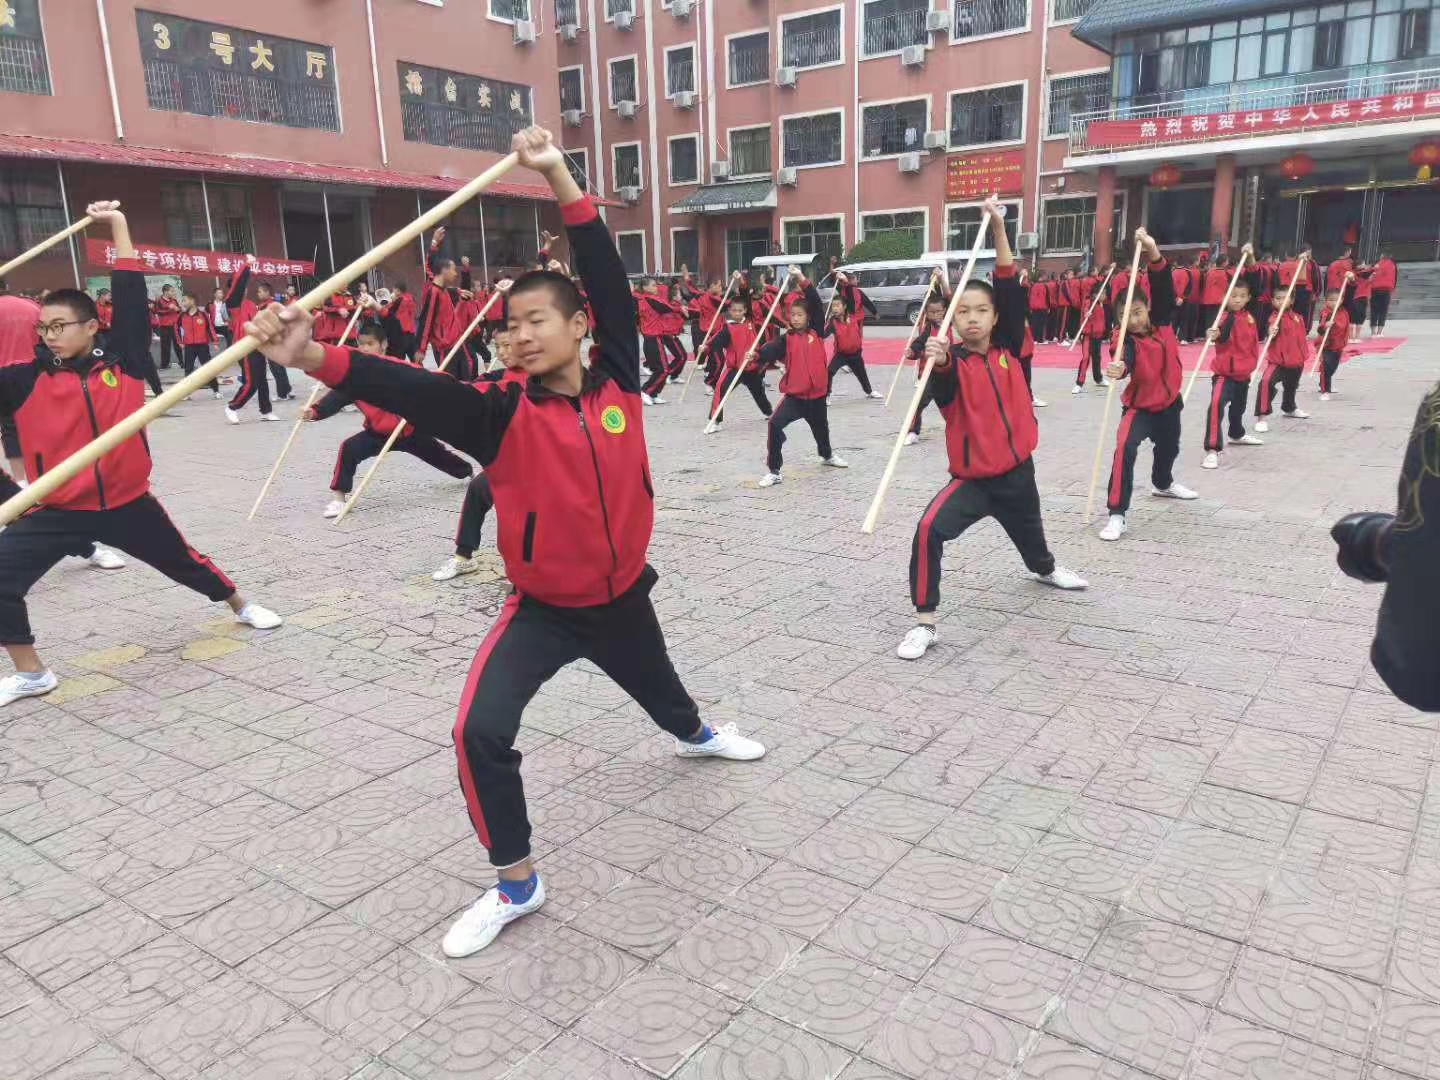 少林寺武術學校學生正在練習武術